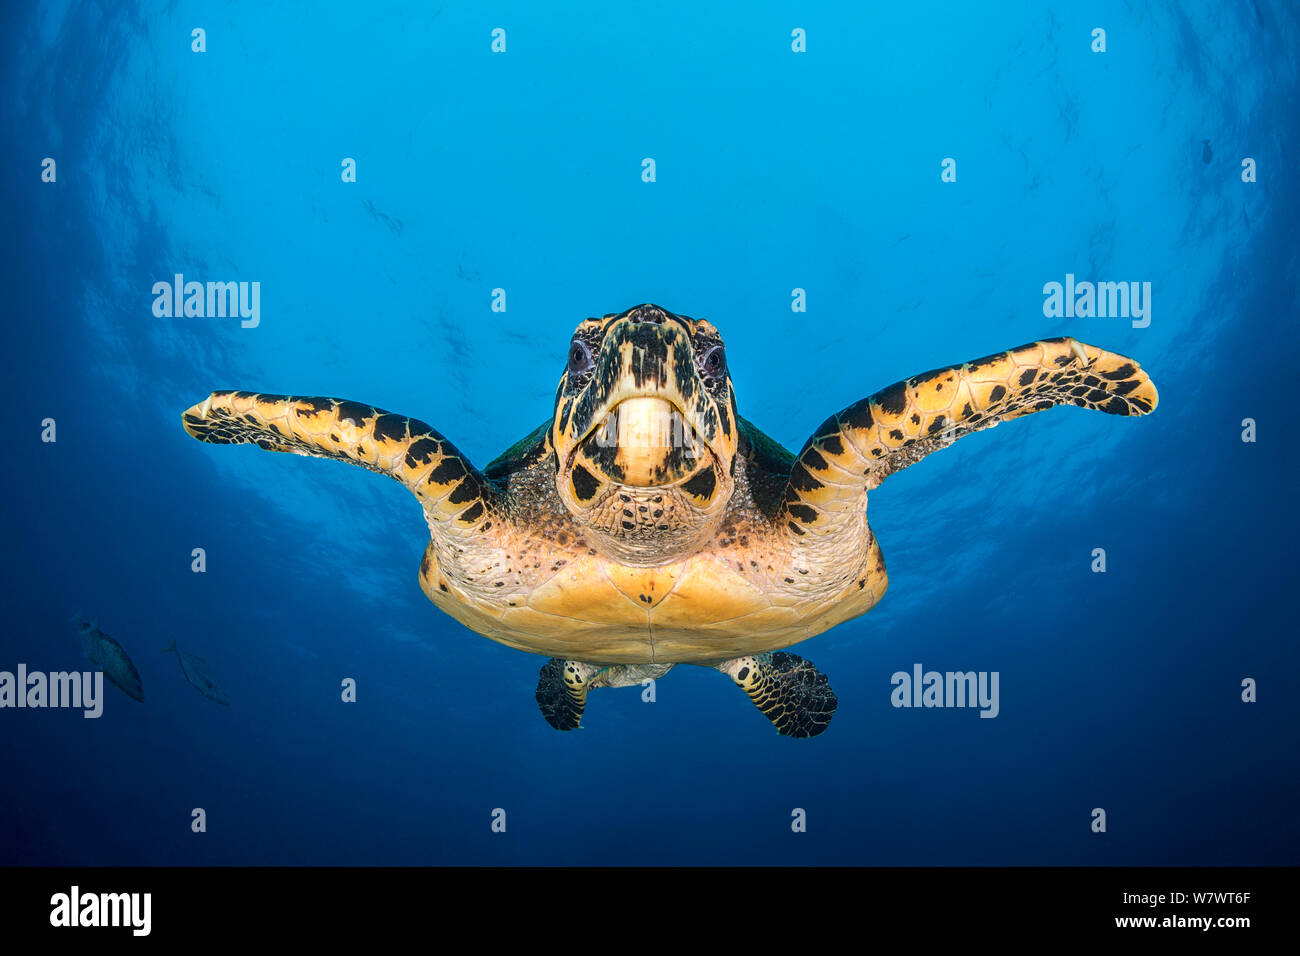 Große männliche Karettschildkröte (Eretmochelys imbricata) Schwimmen im offenen Wasser. Tank Rock, Fiabacet, Misool, Raja Ampat, West Papua, Indonesien. Tropische West Pazifik. Ceram Meer. Stockfoto